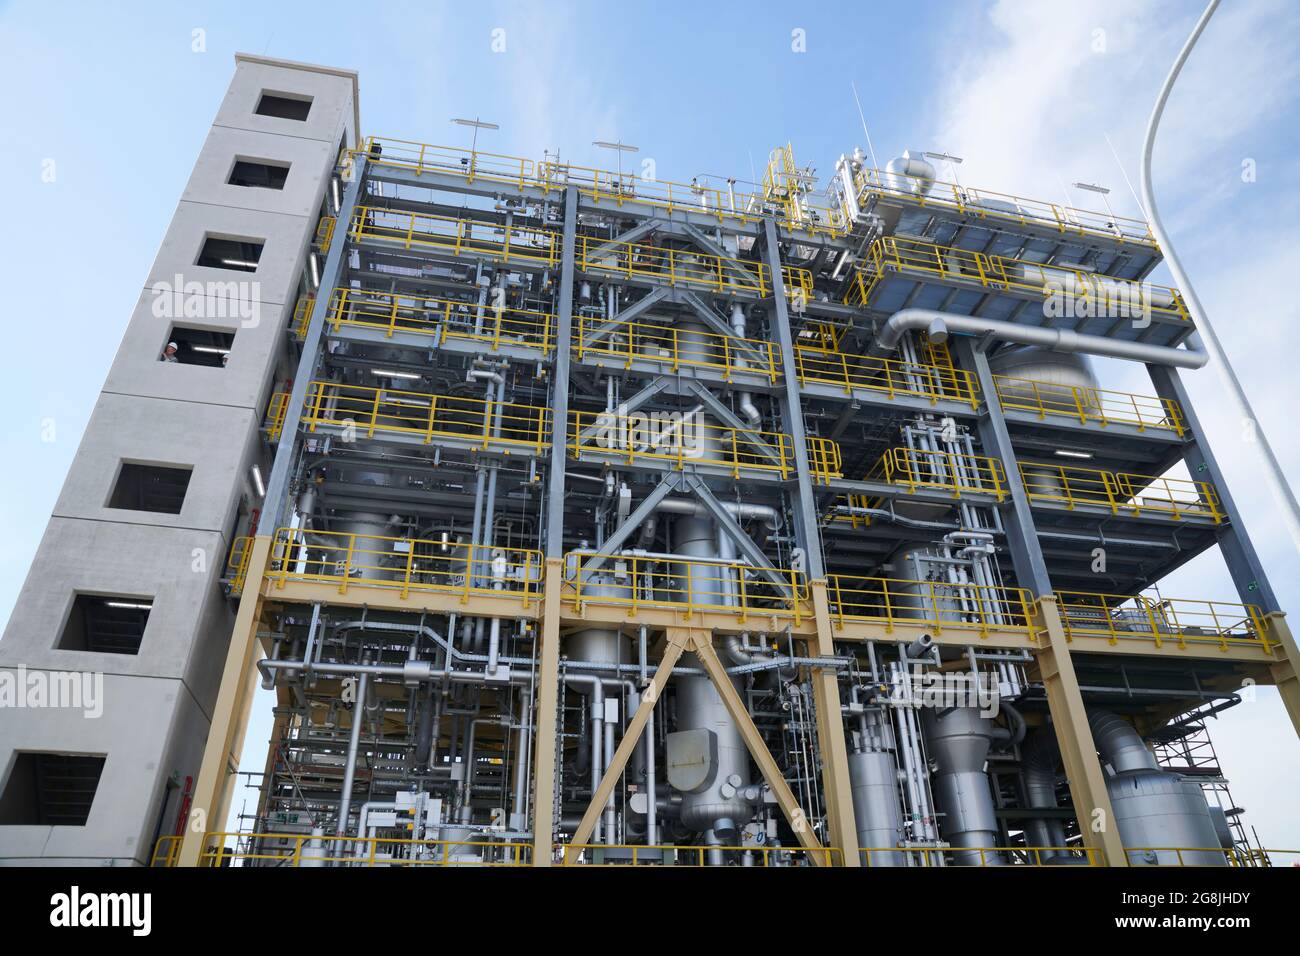 Im Chemie-Park Marl wurde am 8.7.2021 die Weltfroesste Polyamid-12 Anlage von Armin Laschet Ministerpraesident NRW eingeweiht. Stock Photo